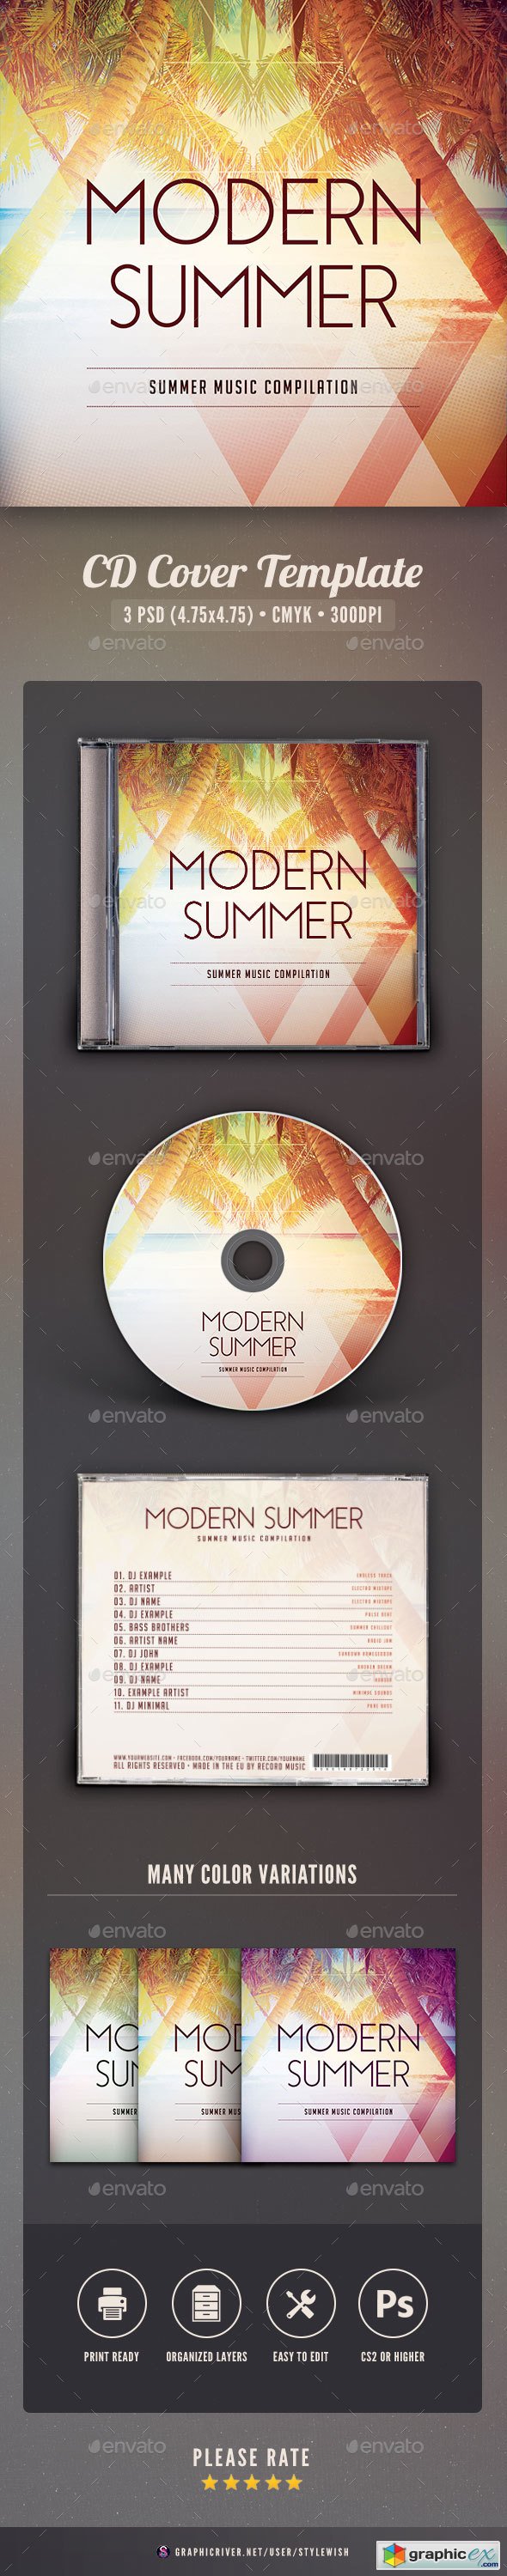 Modern Summer CD Cover Artwork